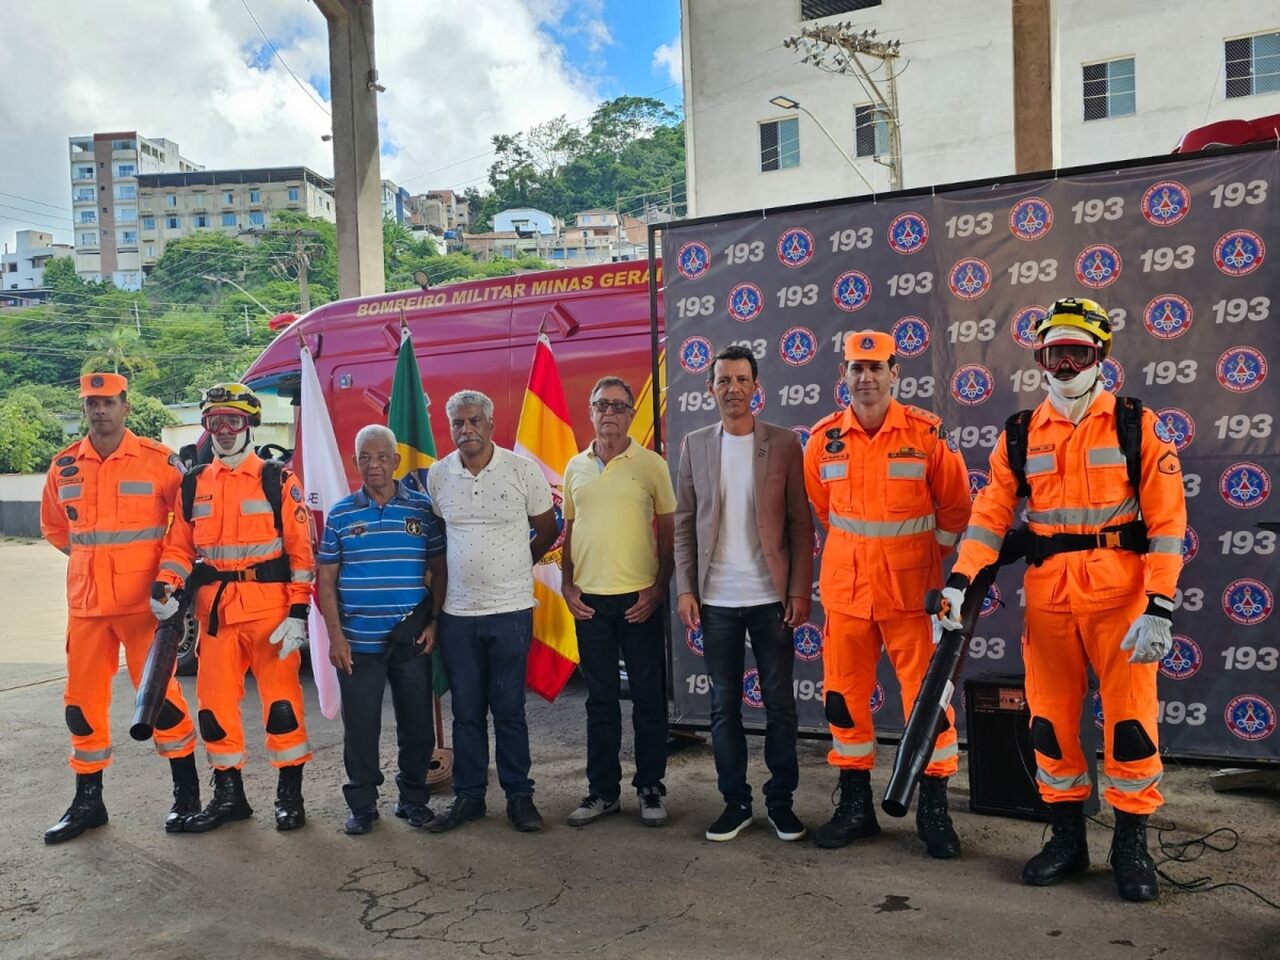 Bombeiros de Manhuaçu, MG, recebem insumos para combater incêndios florestais - Revista Incêndio